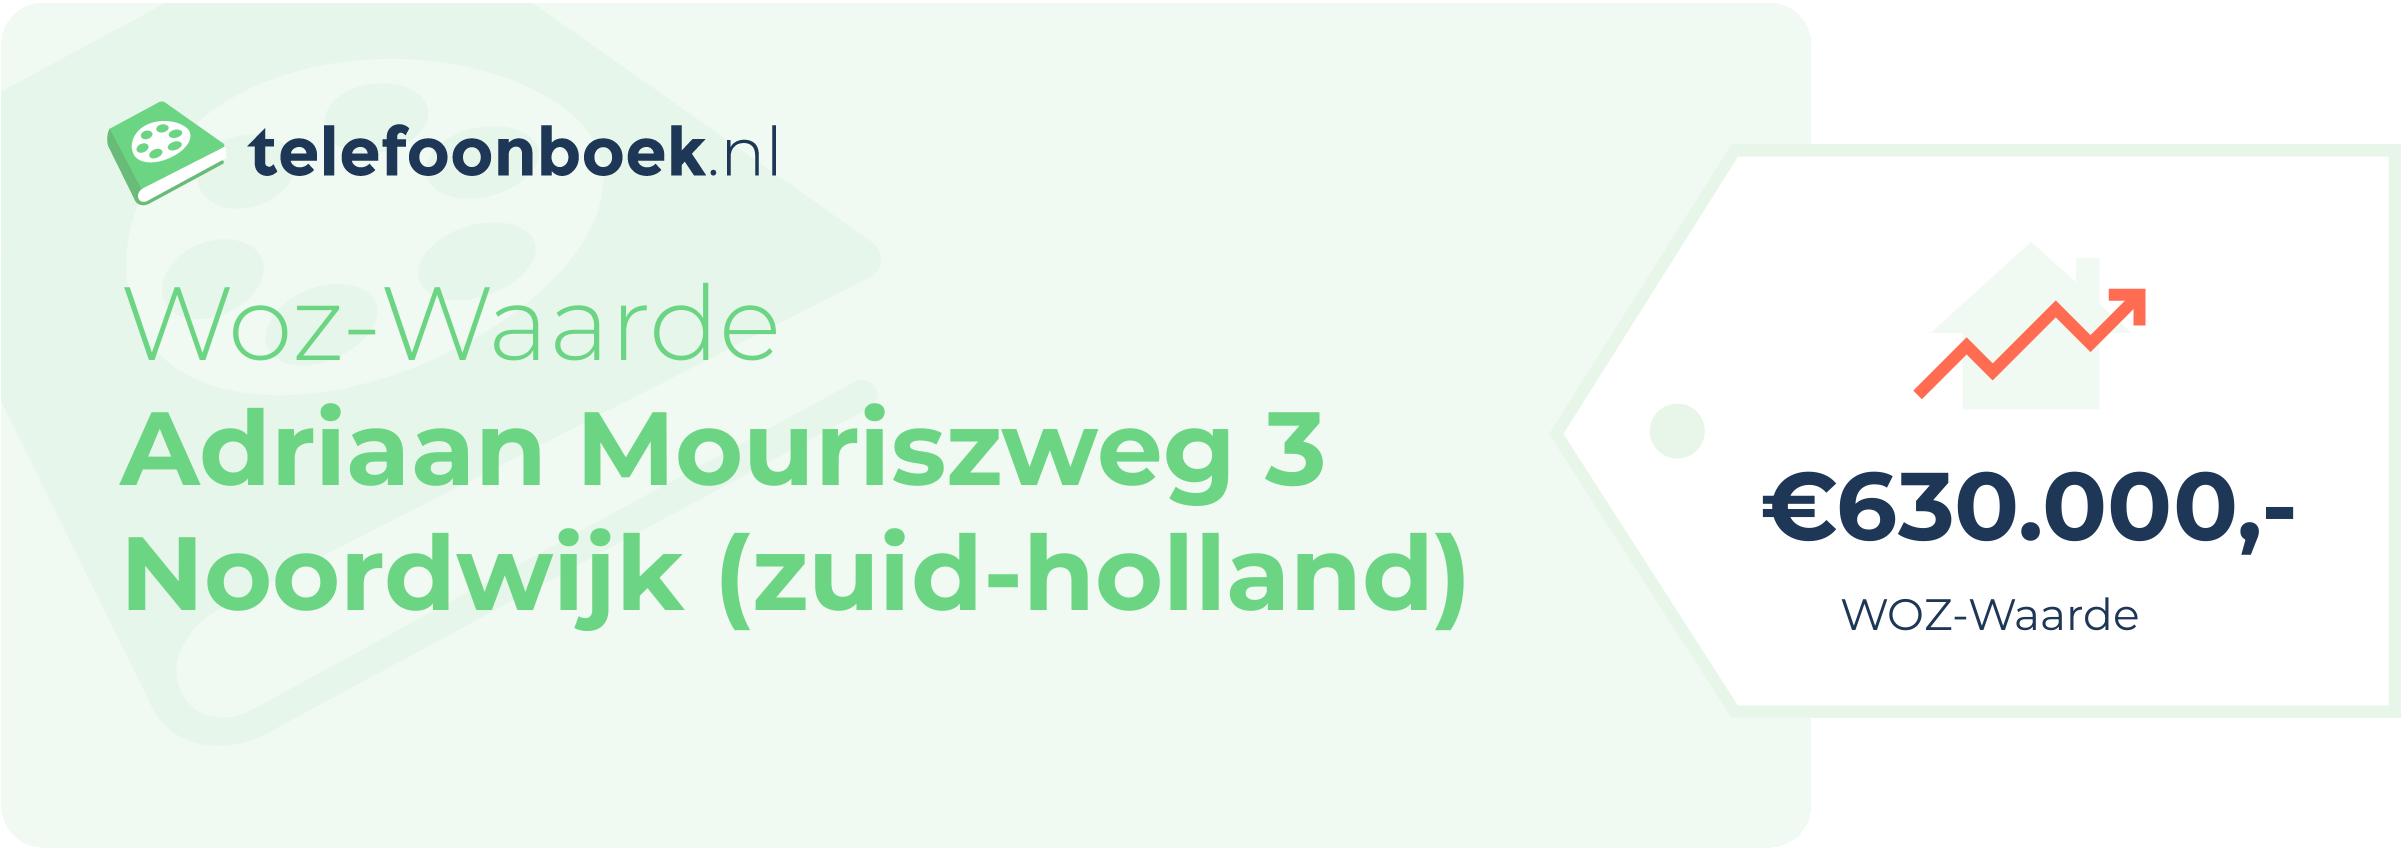 WOZ-waarde Adriaan Mouriszweg 3 Noordwijk (Zuid-Holland)